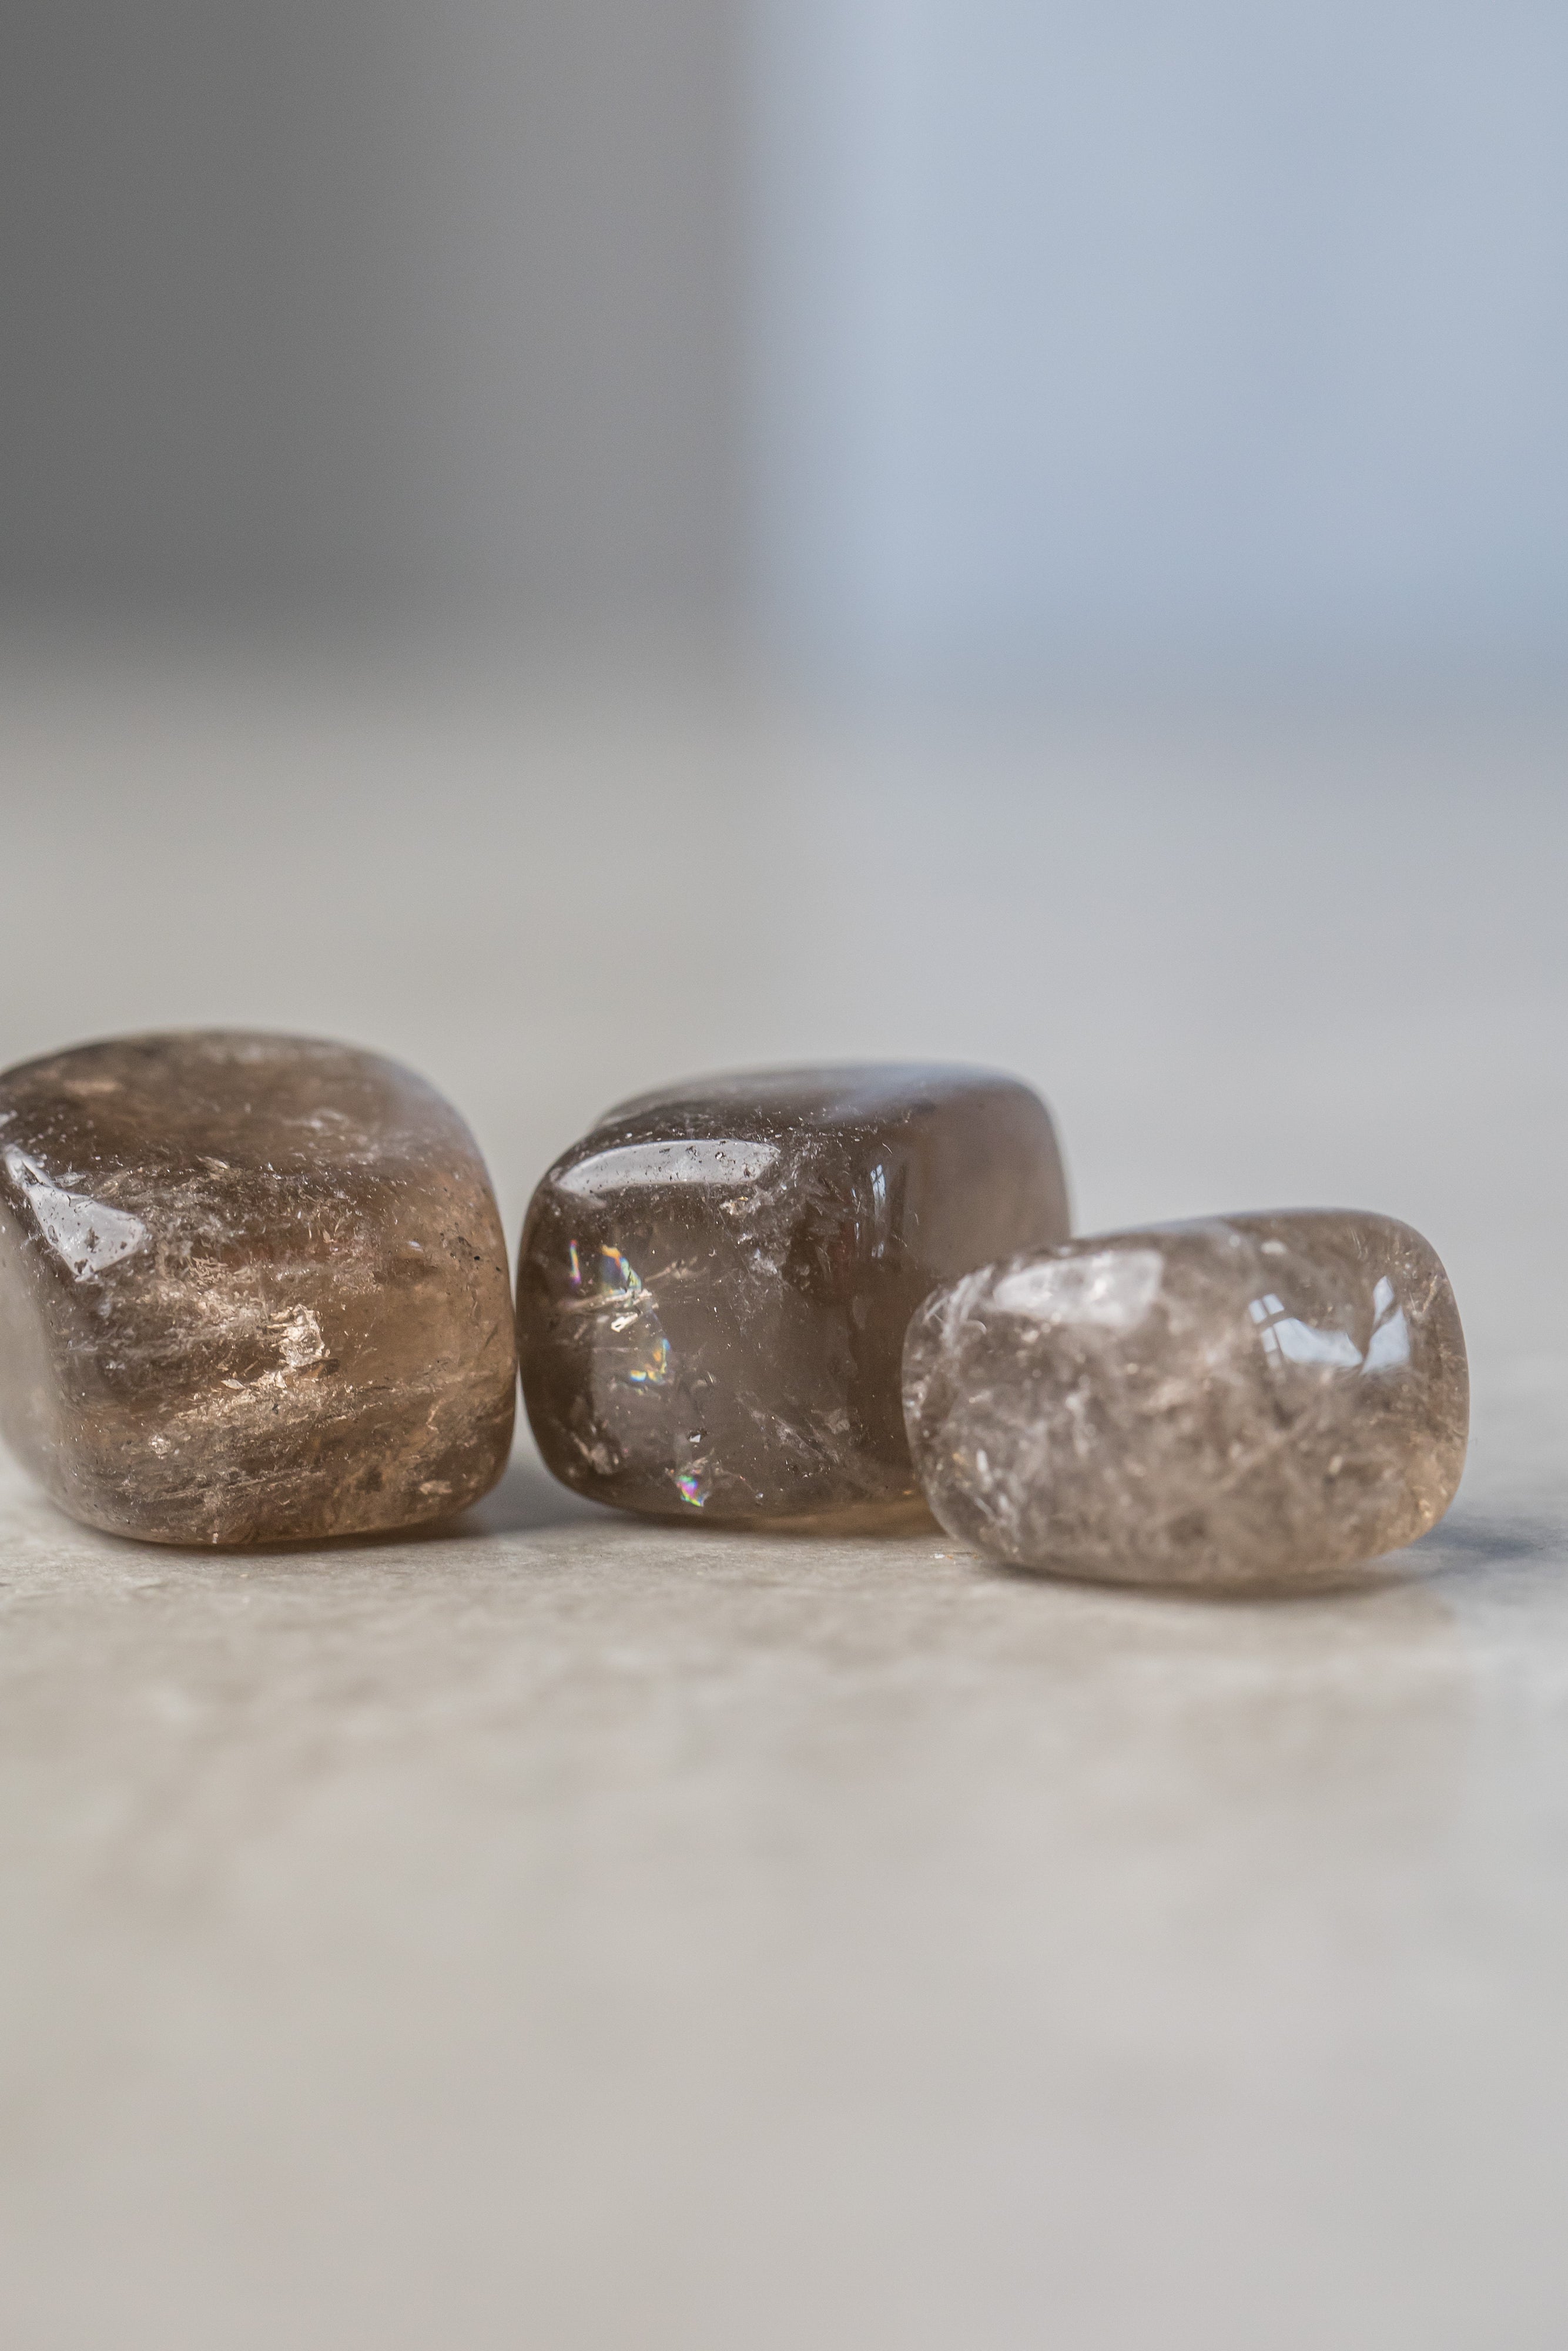 Smoky Quartz - Grounding Stone for Stress Relief and Balance - Everyday Rocks